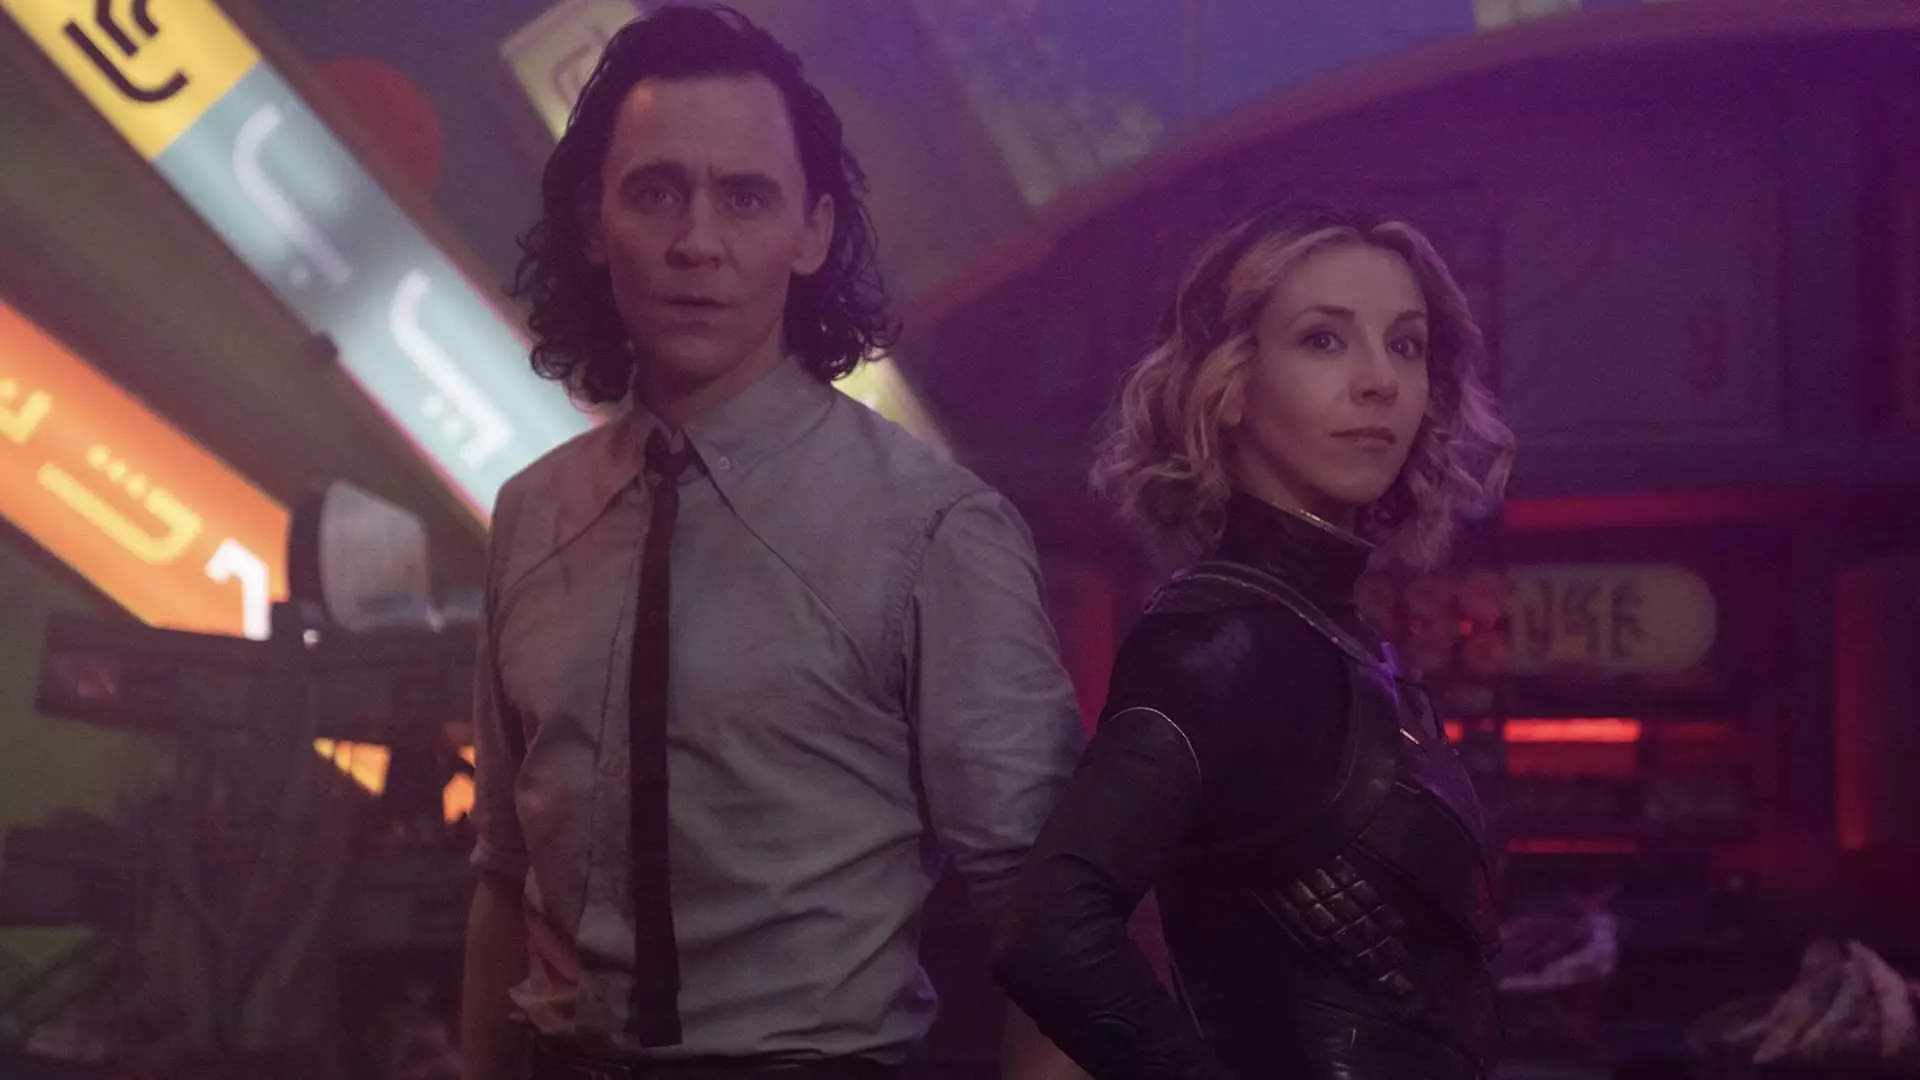 تام هیدلستون در نقش لوکی و سوفیا دی مارتینو در نقش سیلوی در حال مبارزه در شهر در قسمت سوم سریال Loki